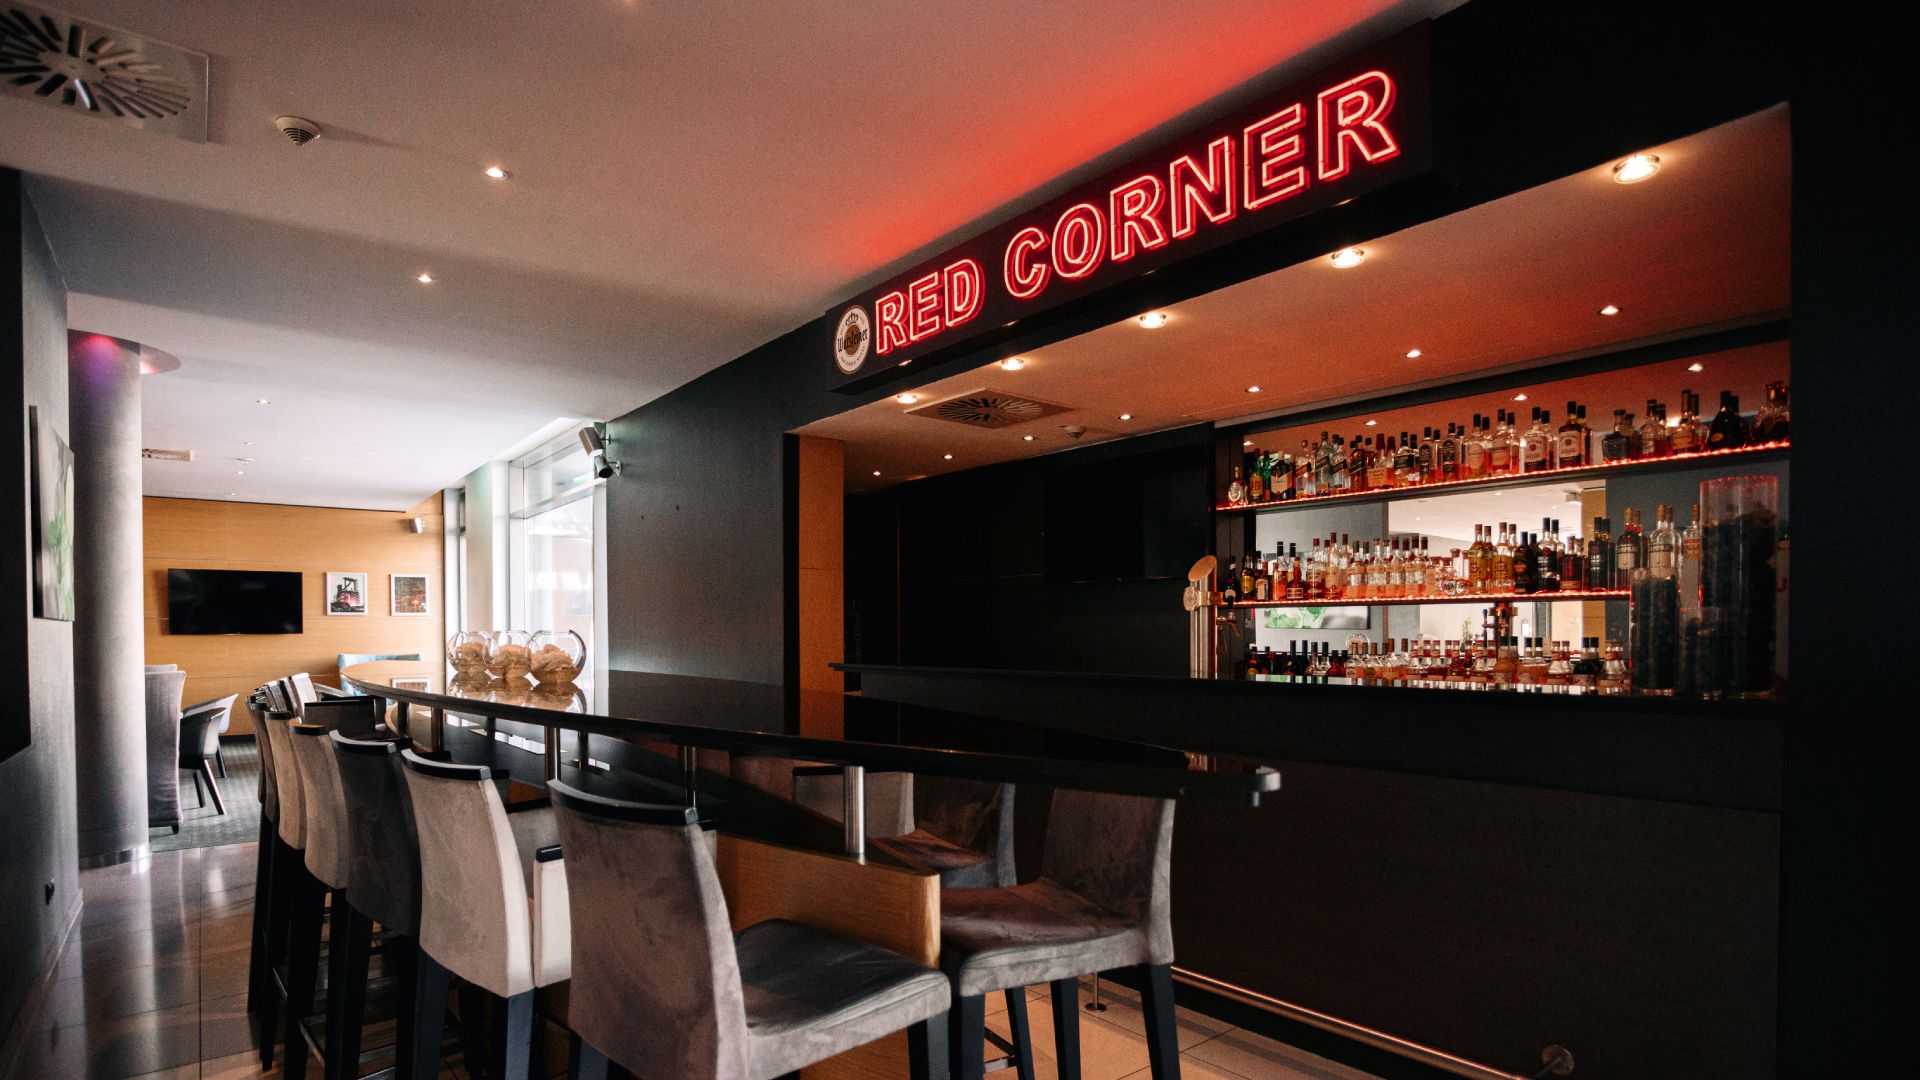 Lounge Bar RedCorner